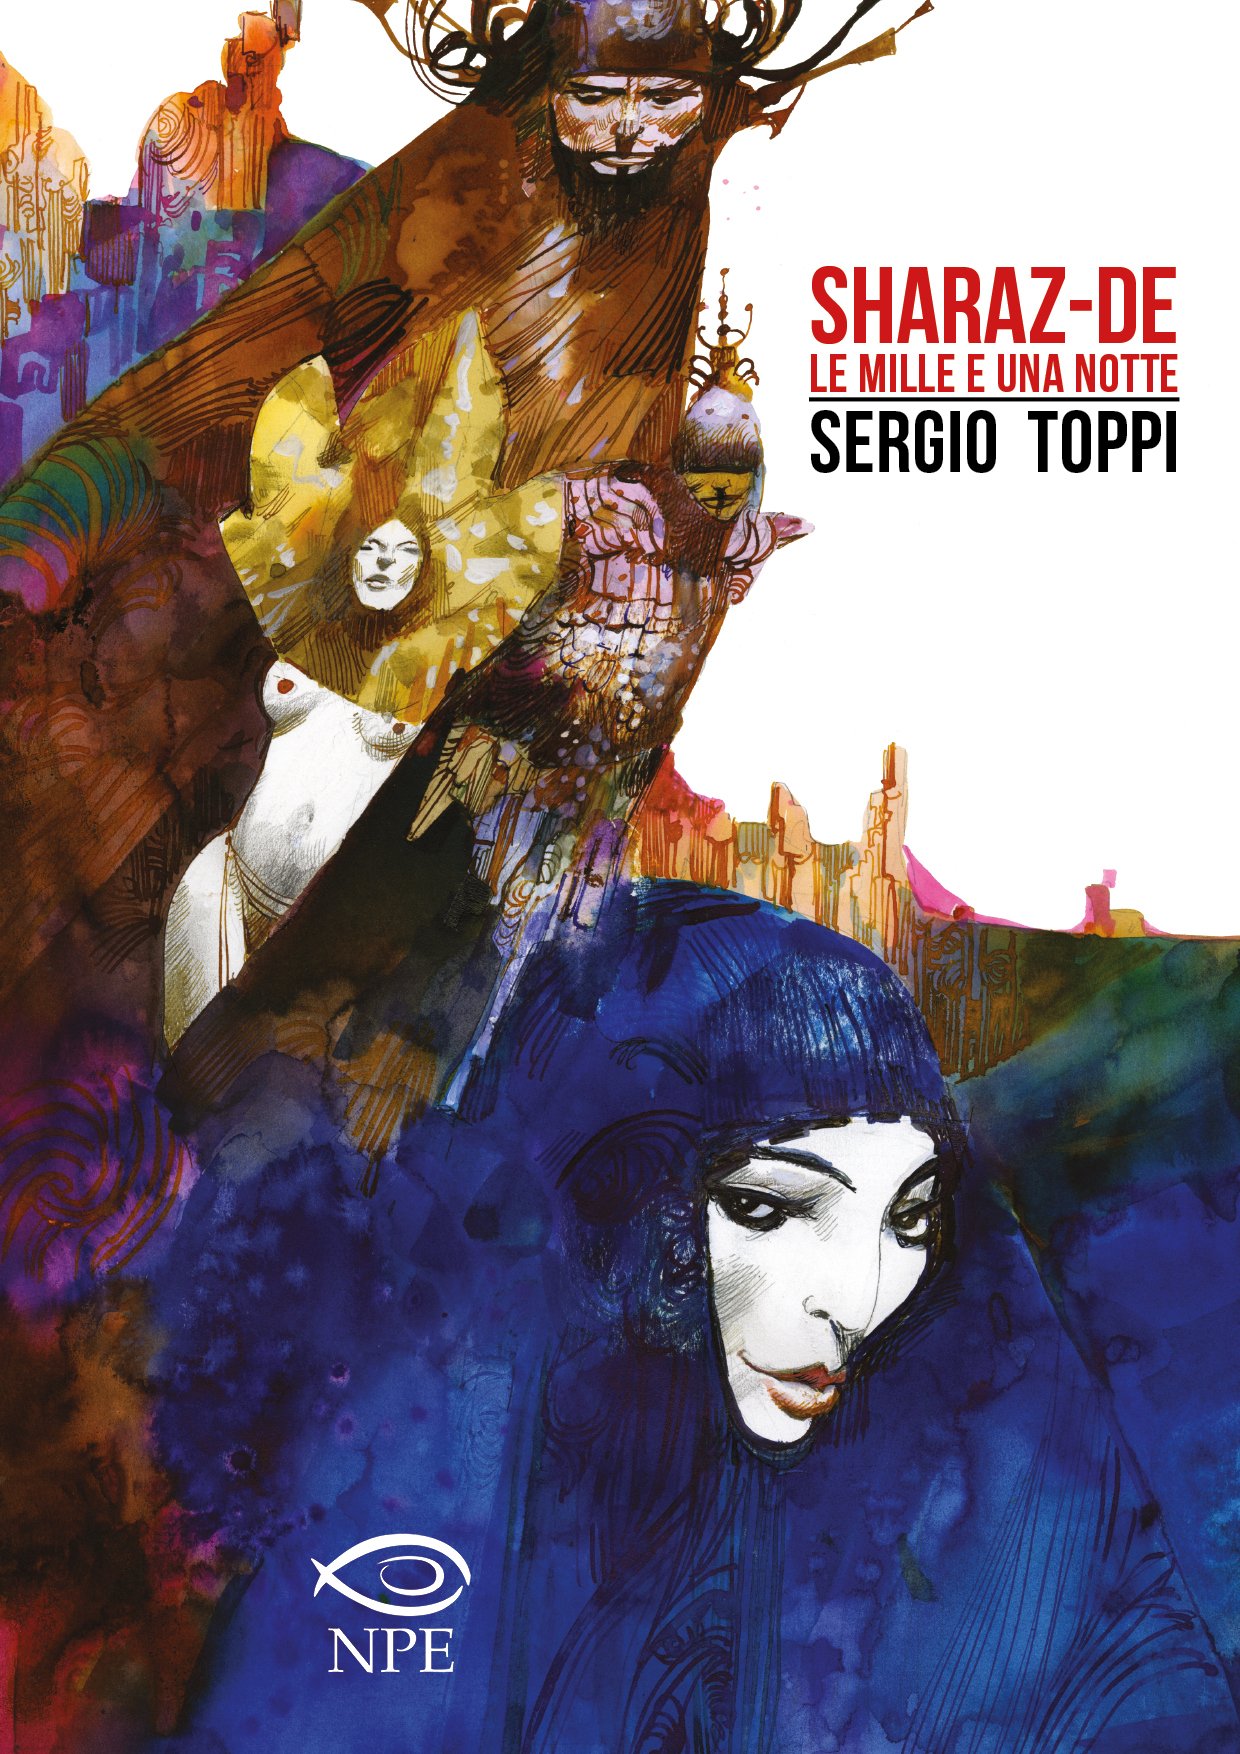 Sharaz-de – Le mille e una notte